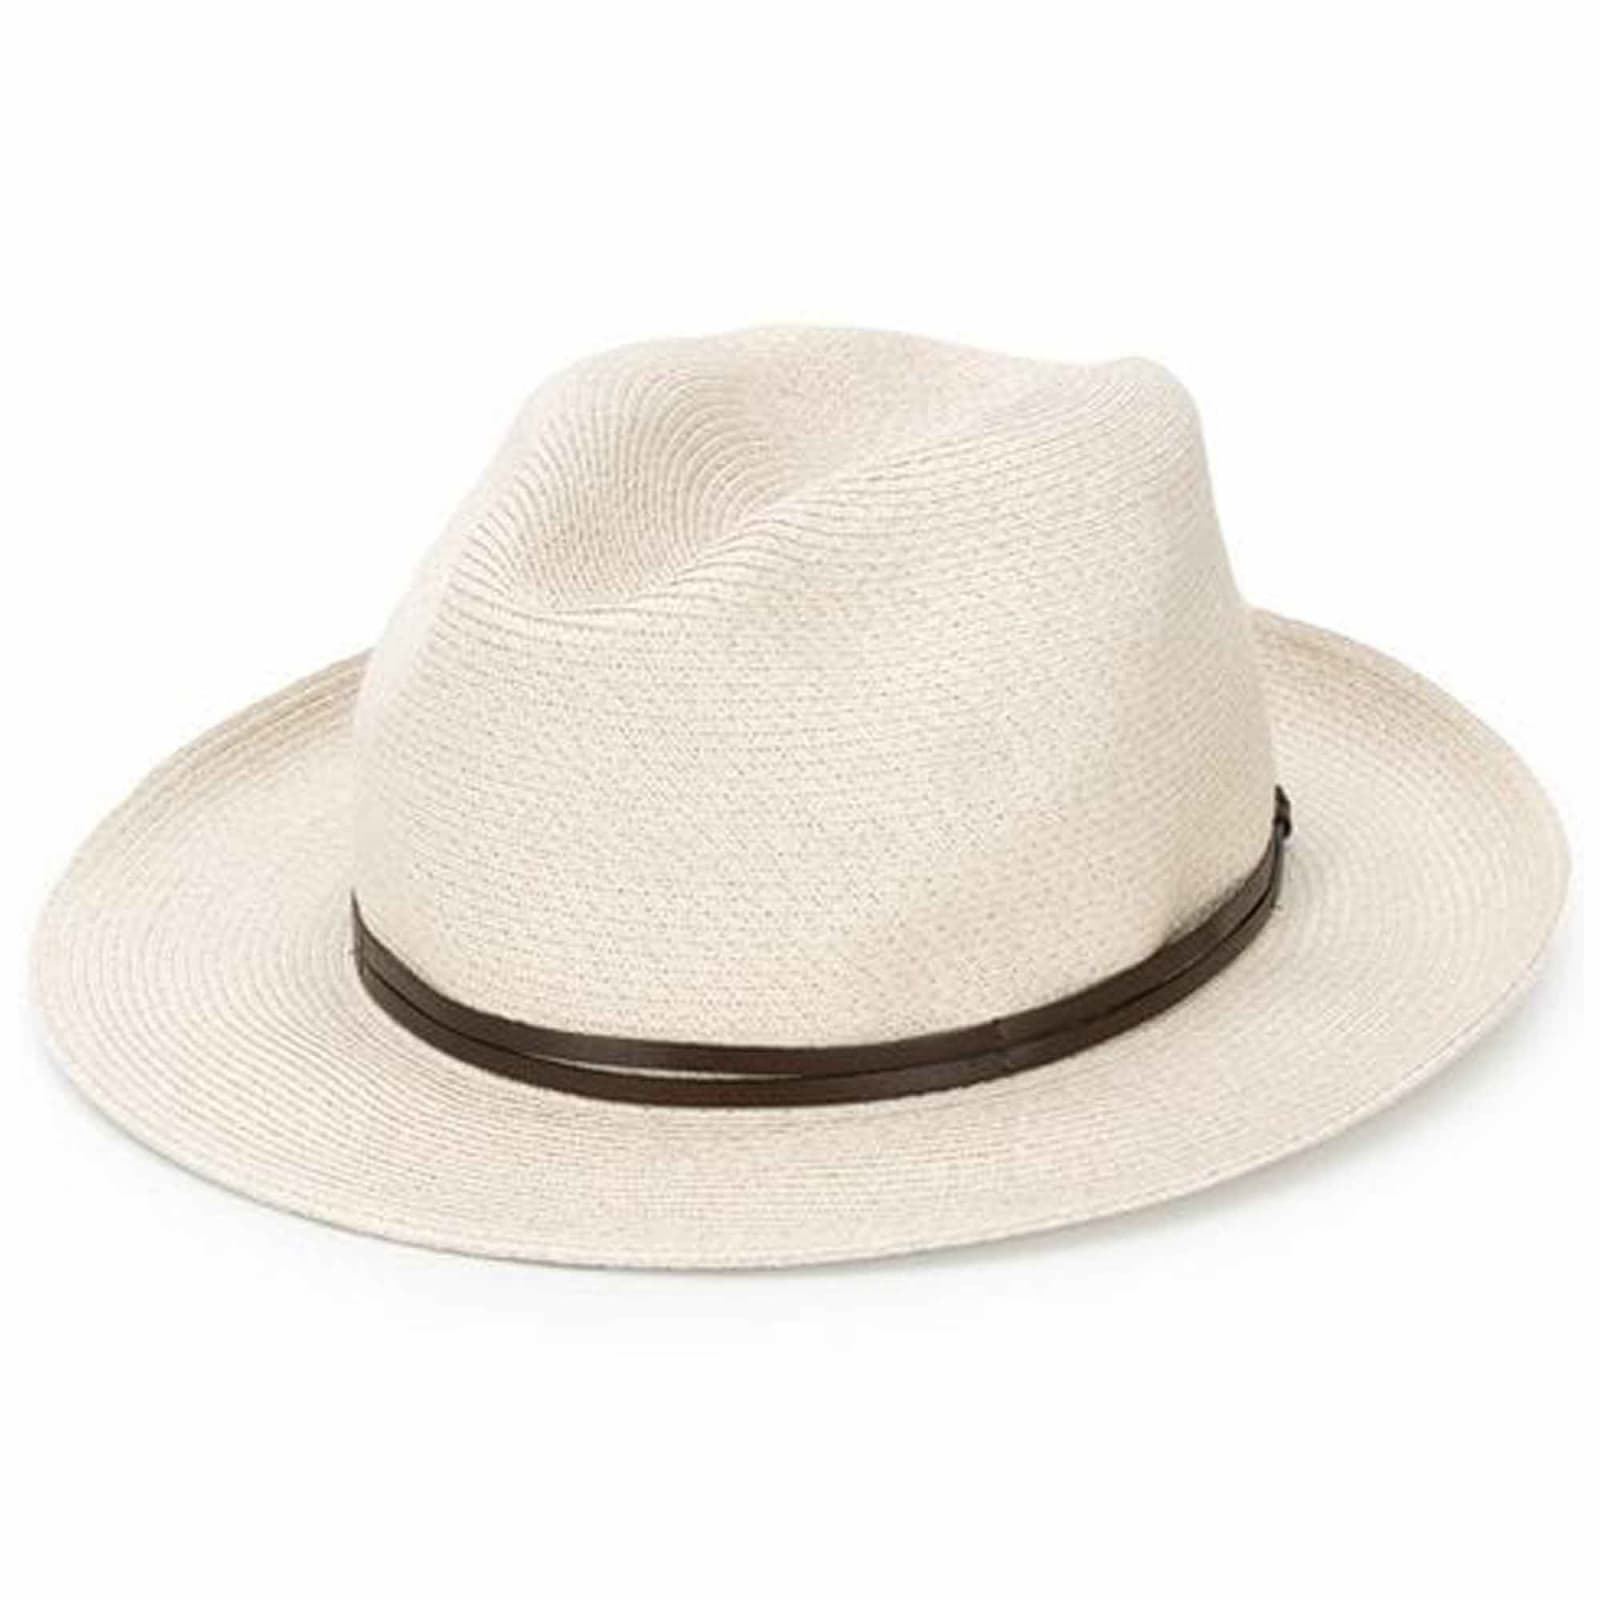 White Chapeaux Hat